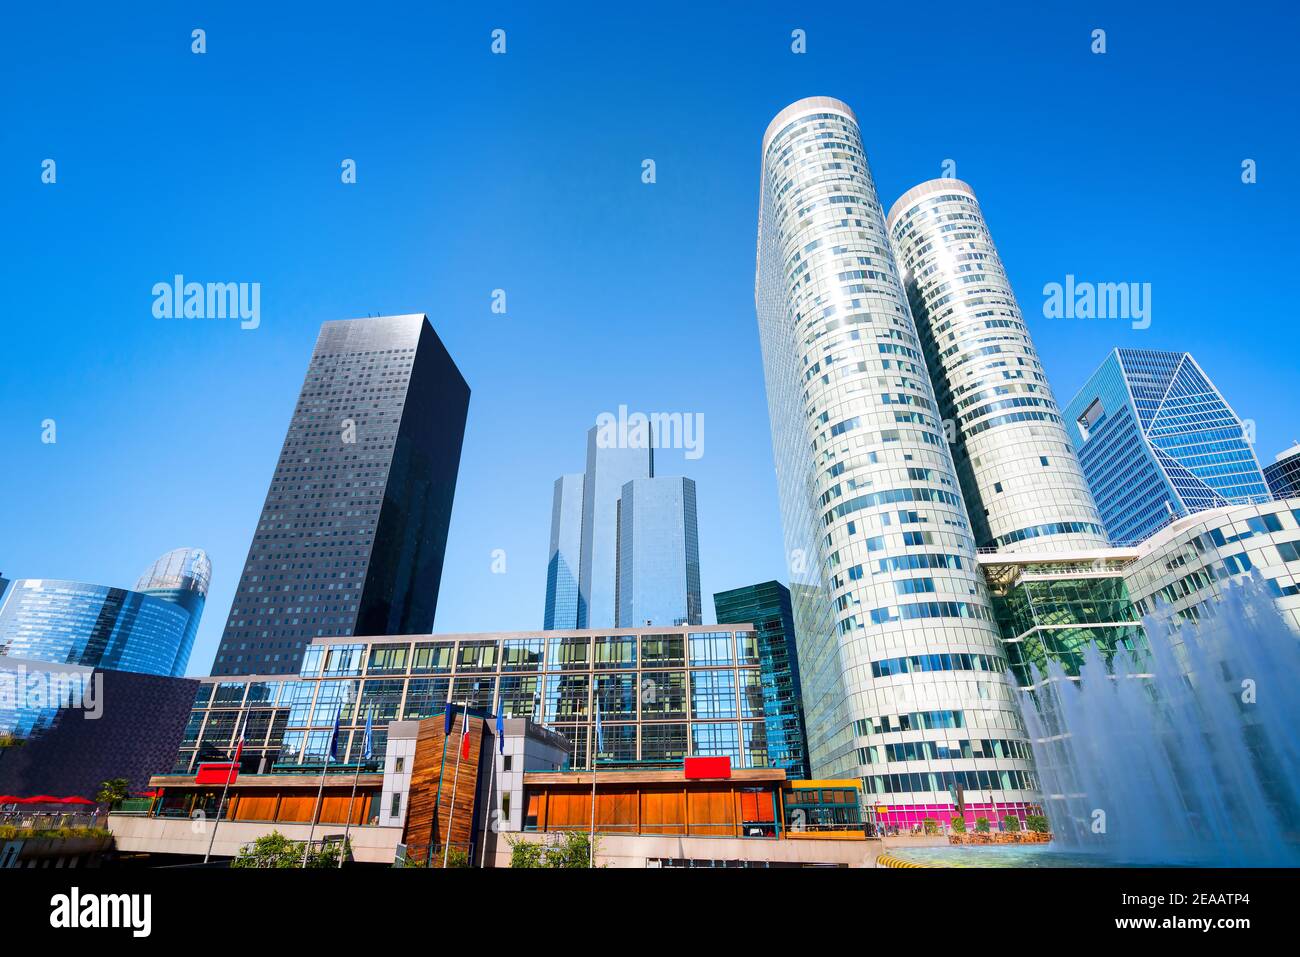 Moderno distrito de negocios de París y el azul claro del cielo, Francia Foto de stock